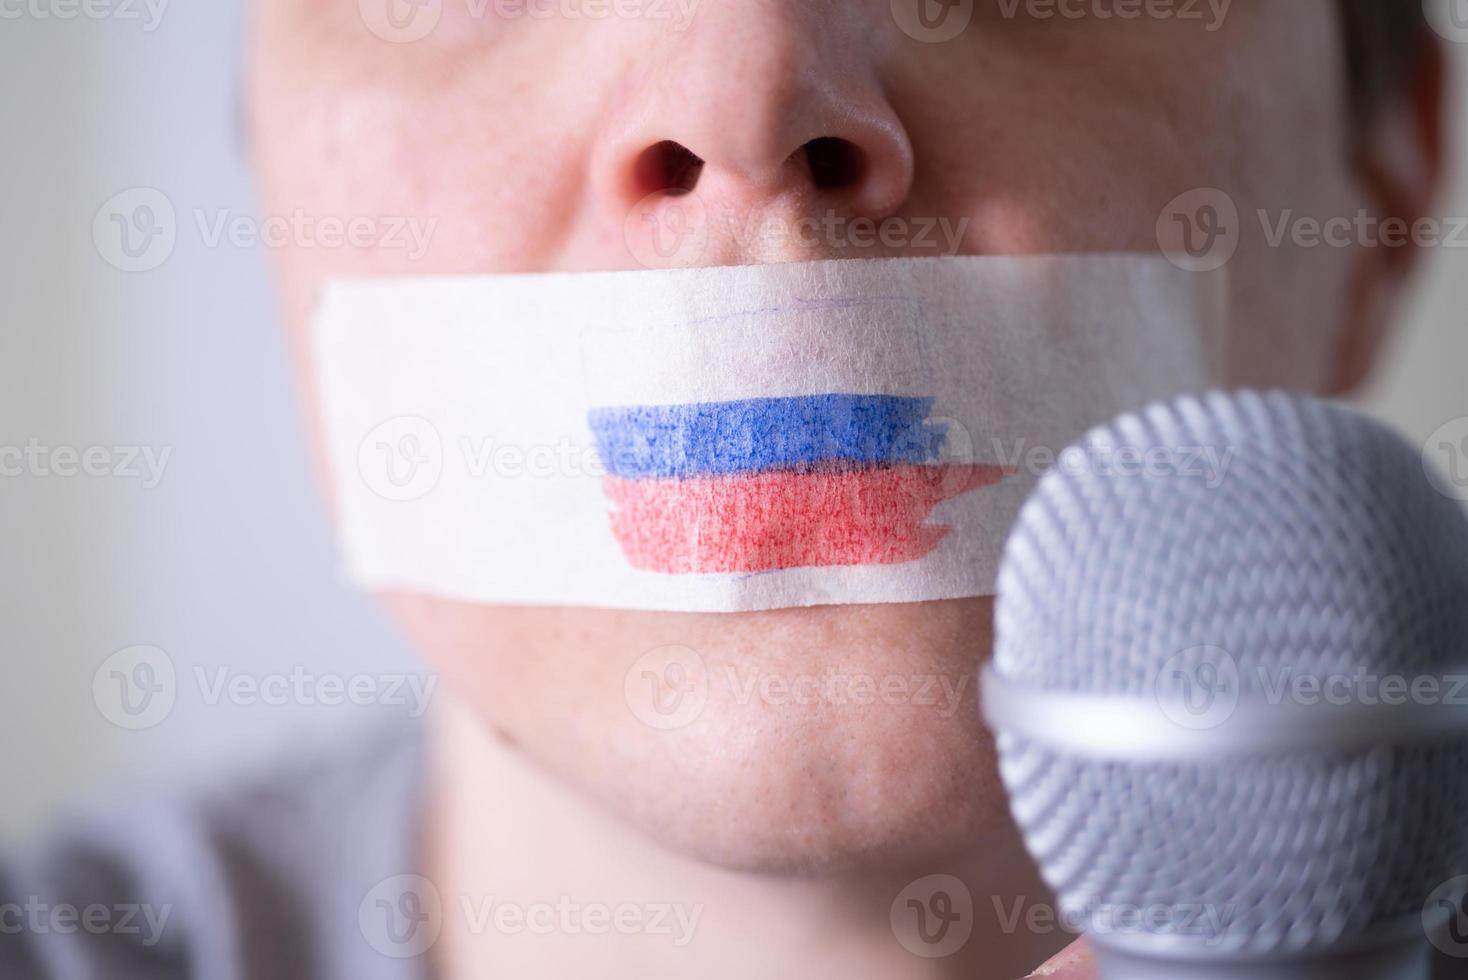 una boca tapada con cinta adhesiva con una bandera rusa, tratando de hablar por un micrófono. foto